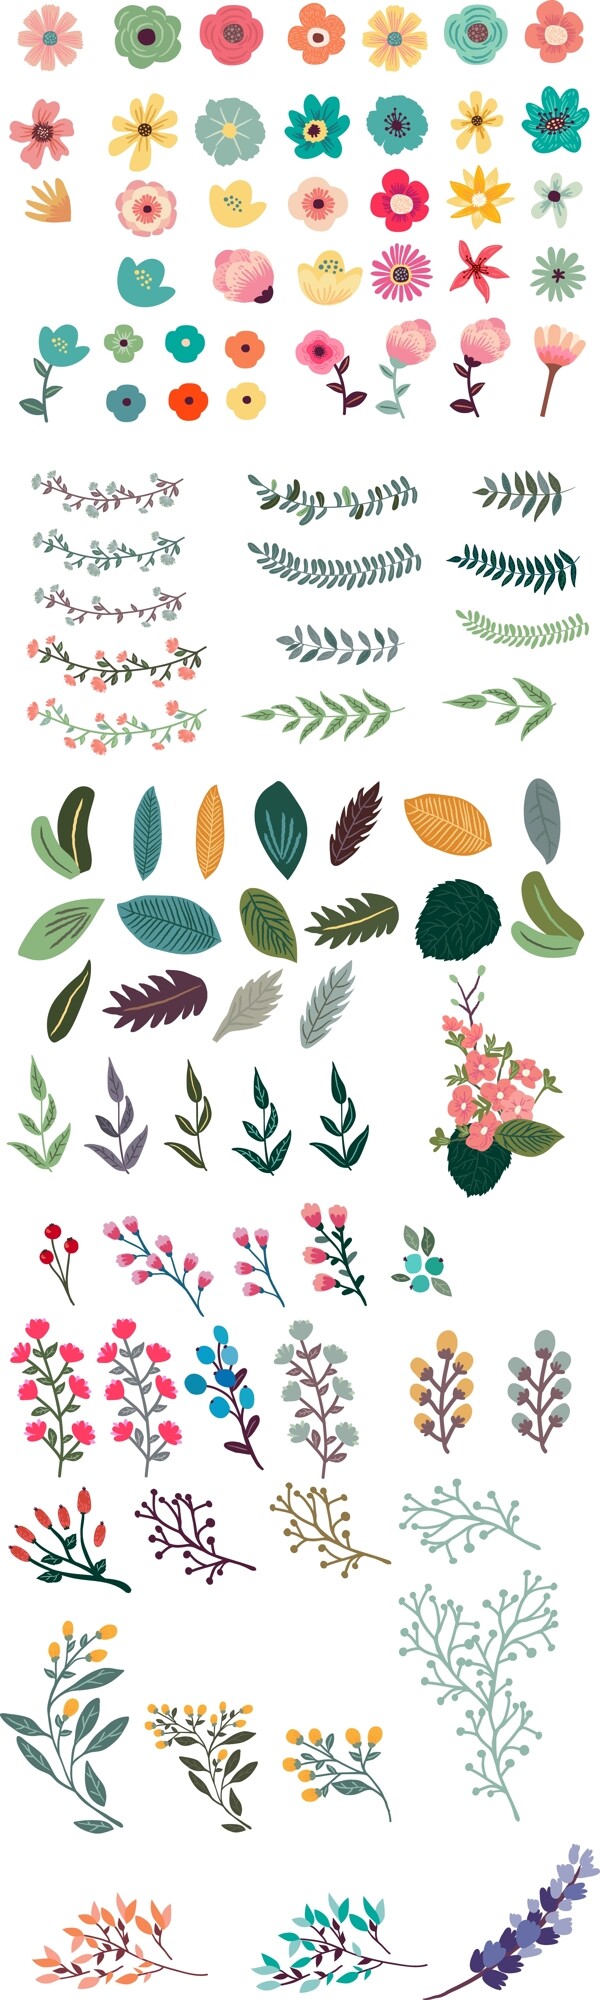 水彩绘彩色植物插画